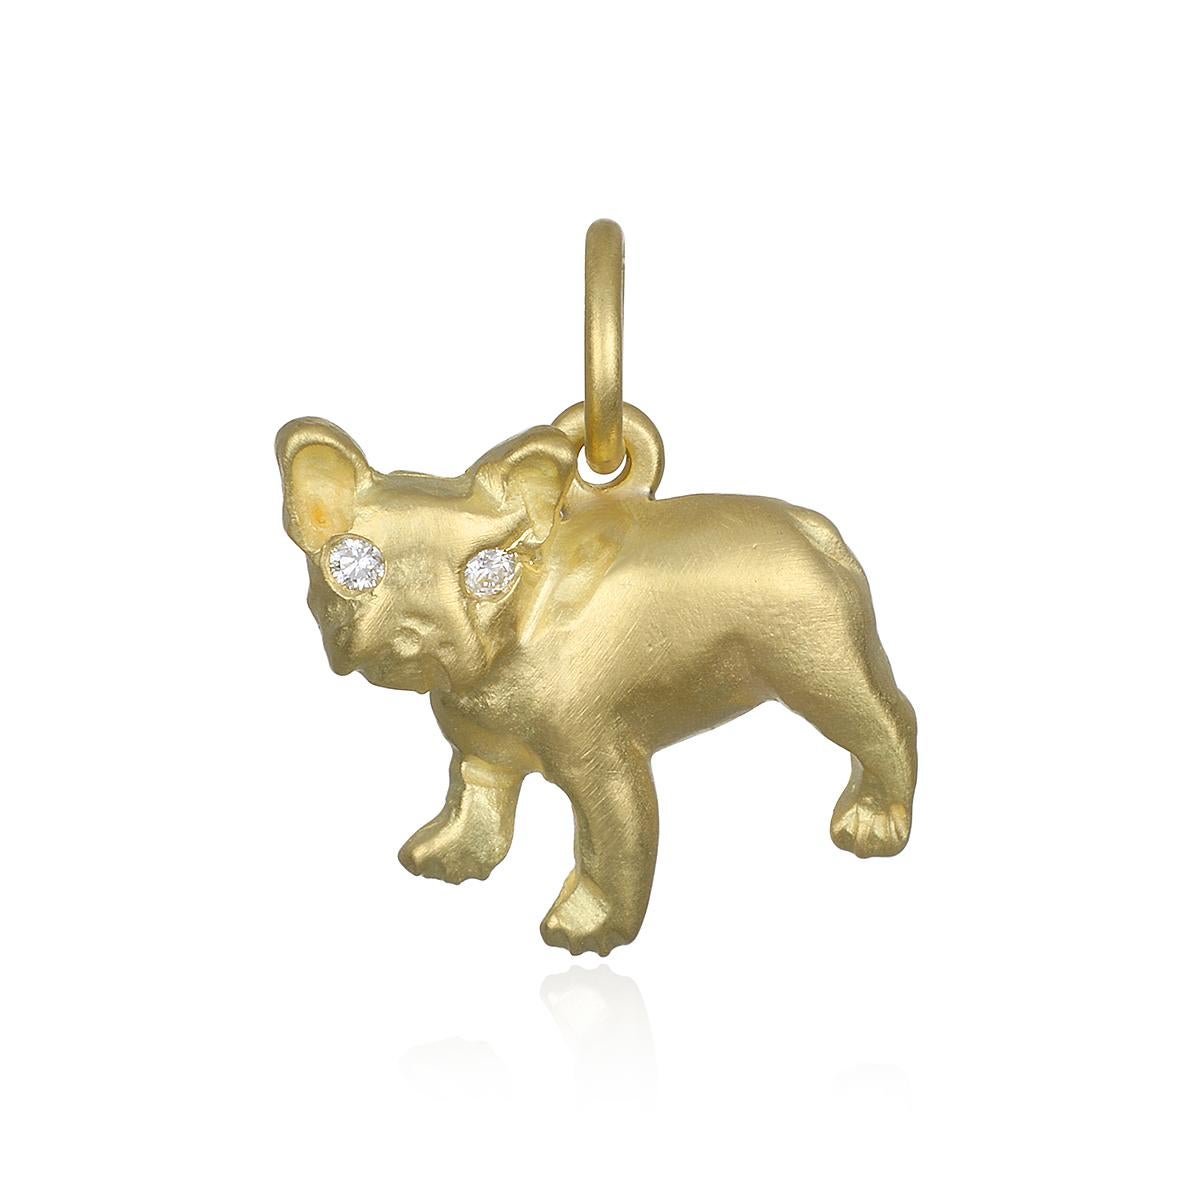 Der Faye Kim 18 Karat Gold French Bulldog Charm ist für den Frenchie-Liebhaber voller Persönlichkeit und komplett mit Diamantaugen. Die Kabelkette ist 16-18